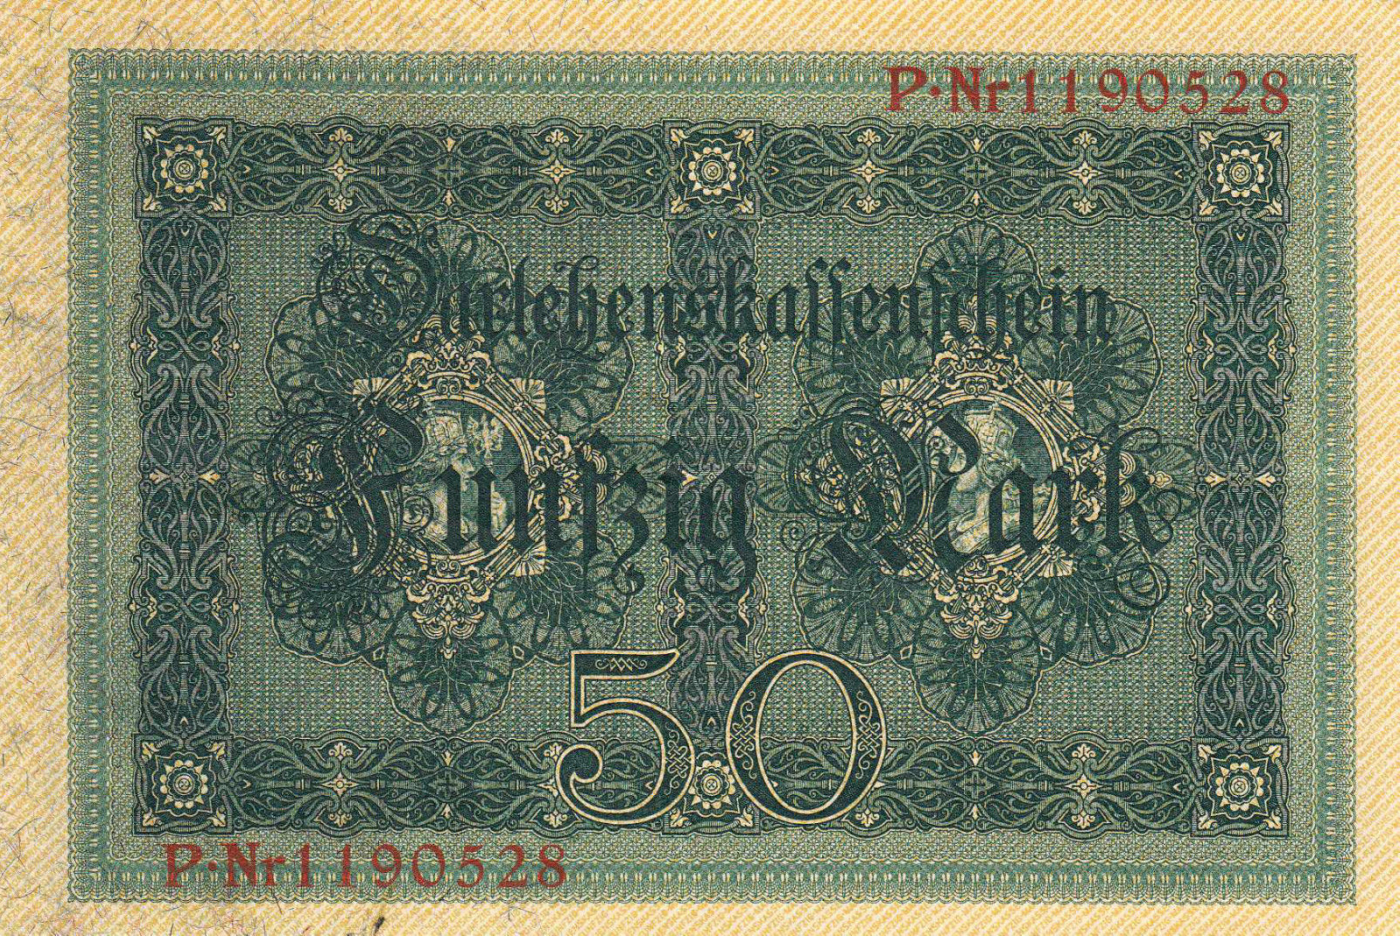 50 Mark 1914 (5. VIII.), 1914 First Issue - Darlehenskassenschein - Germany  - Banknote - 2156